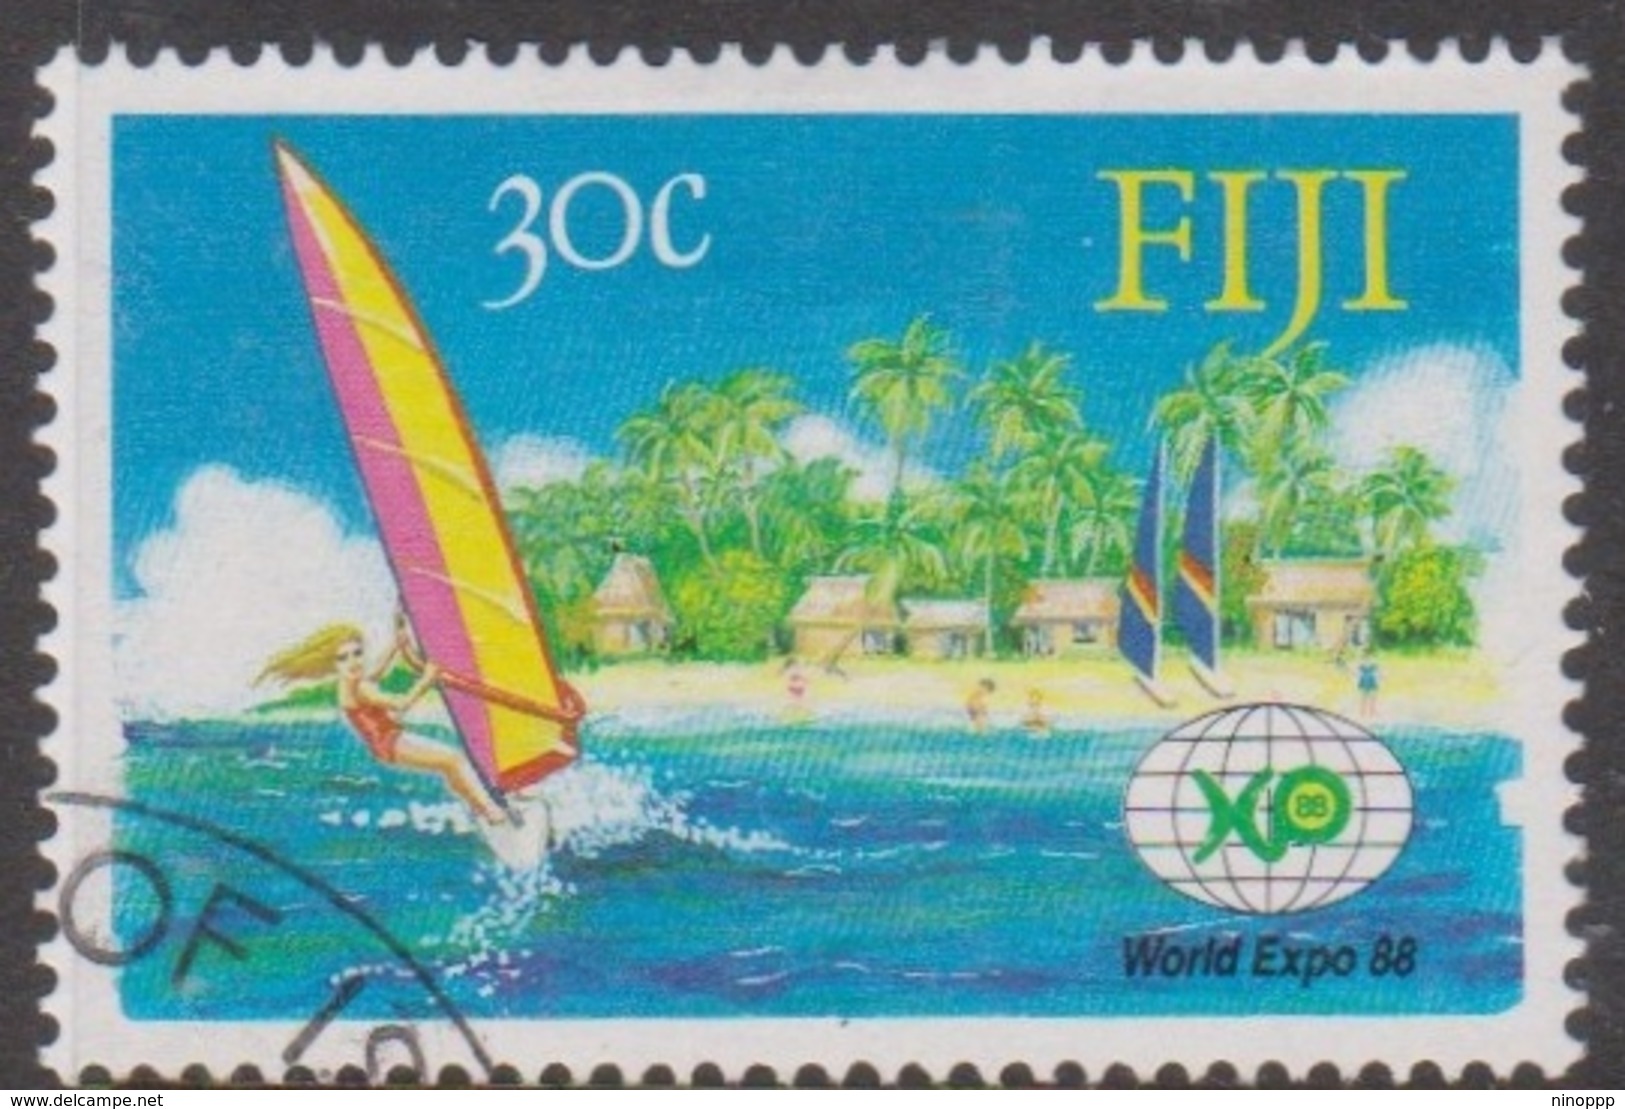 Fiji SG 770 1988 World Expo 88 Fair, Used - Fiji (1970-...)